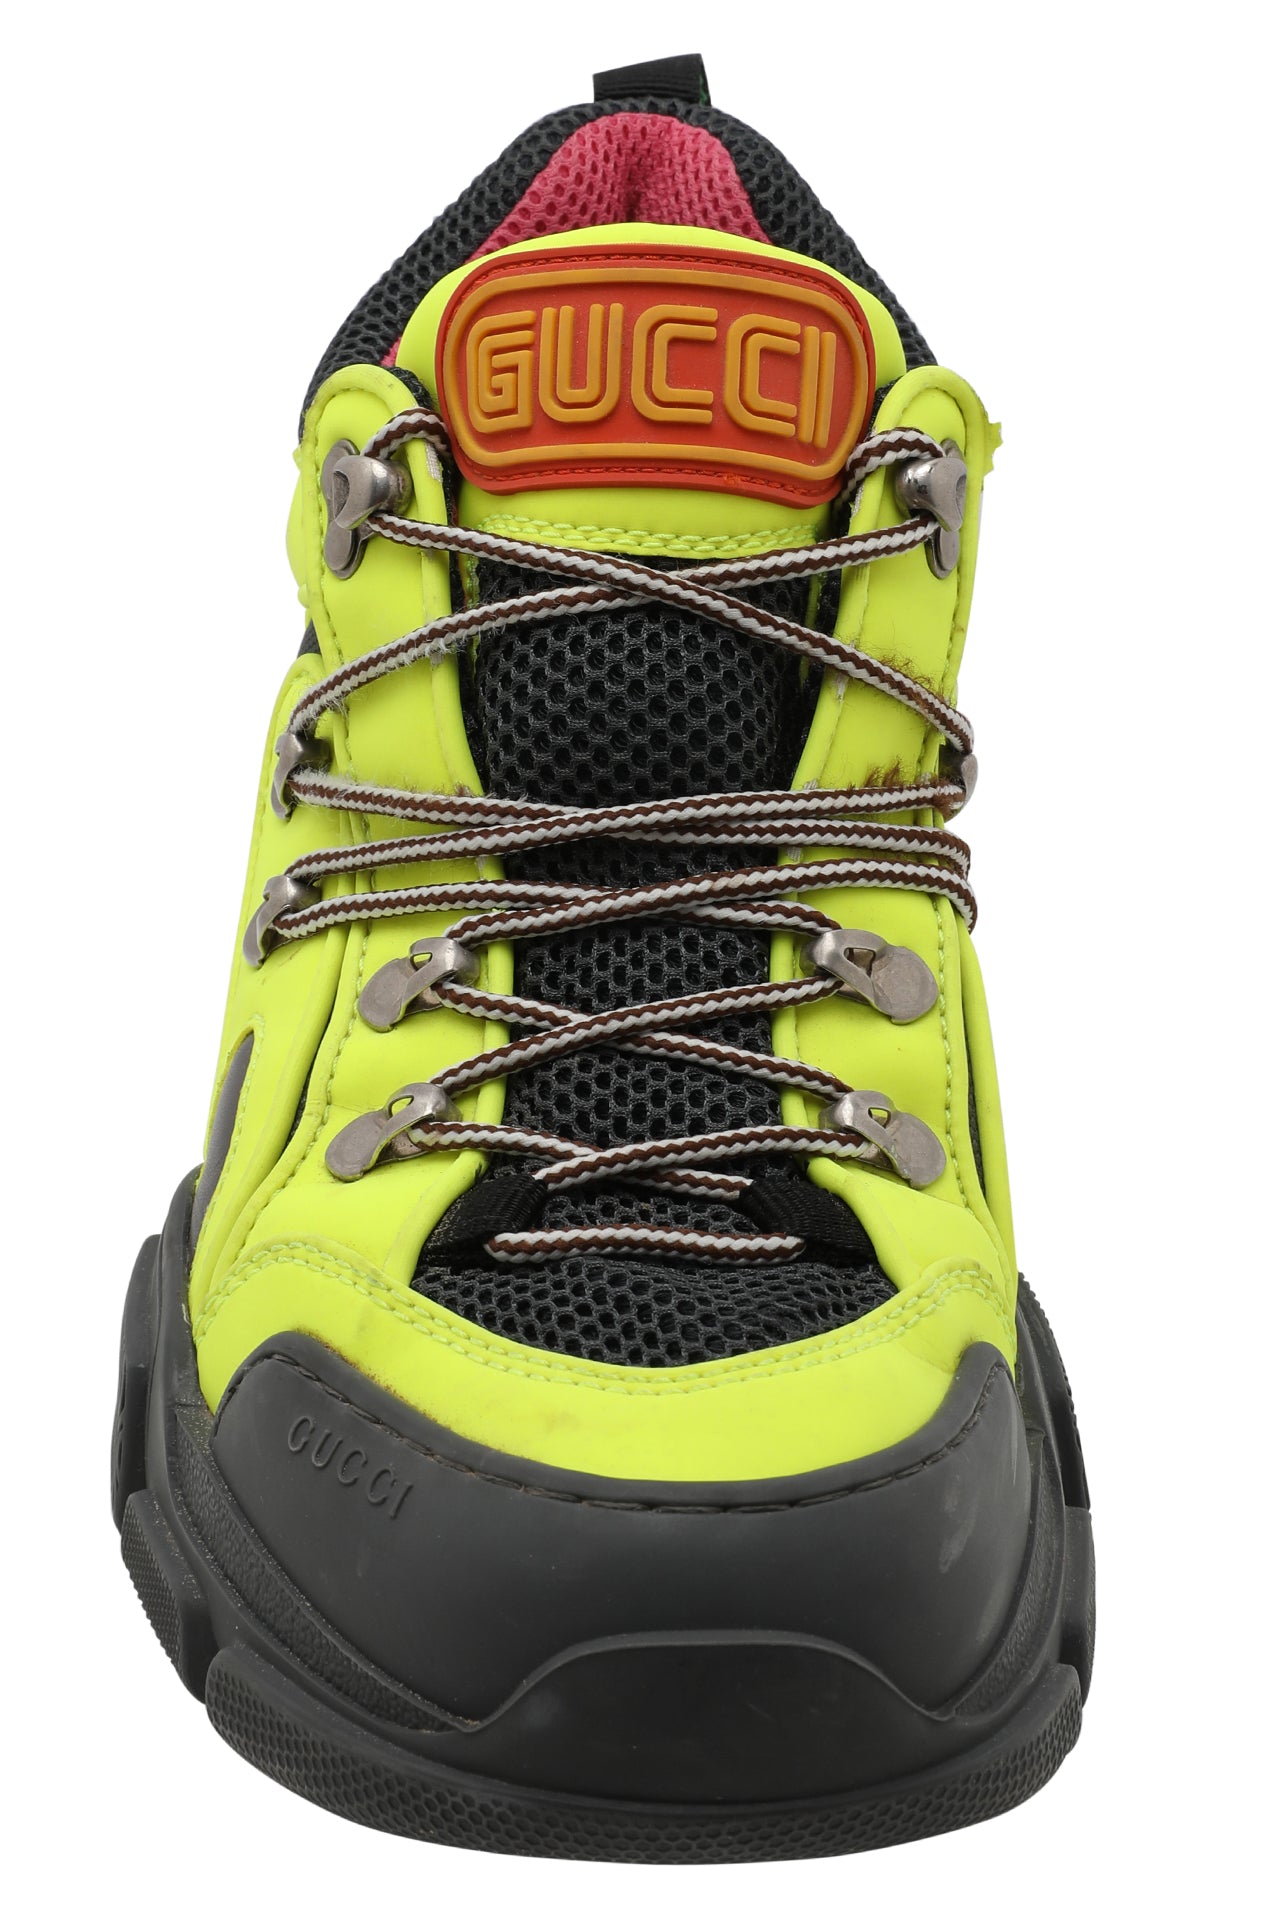 Gucci Flashtrek Sneakers Low Top UK 5.5